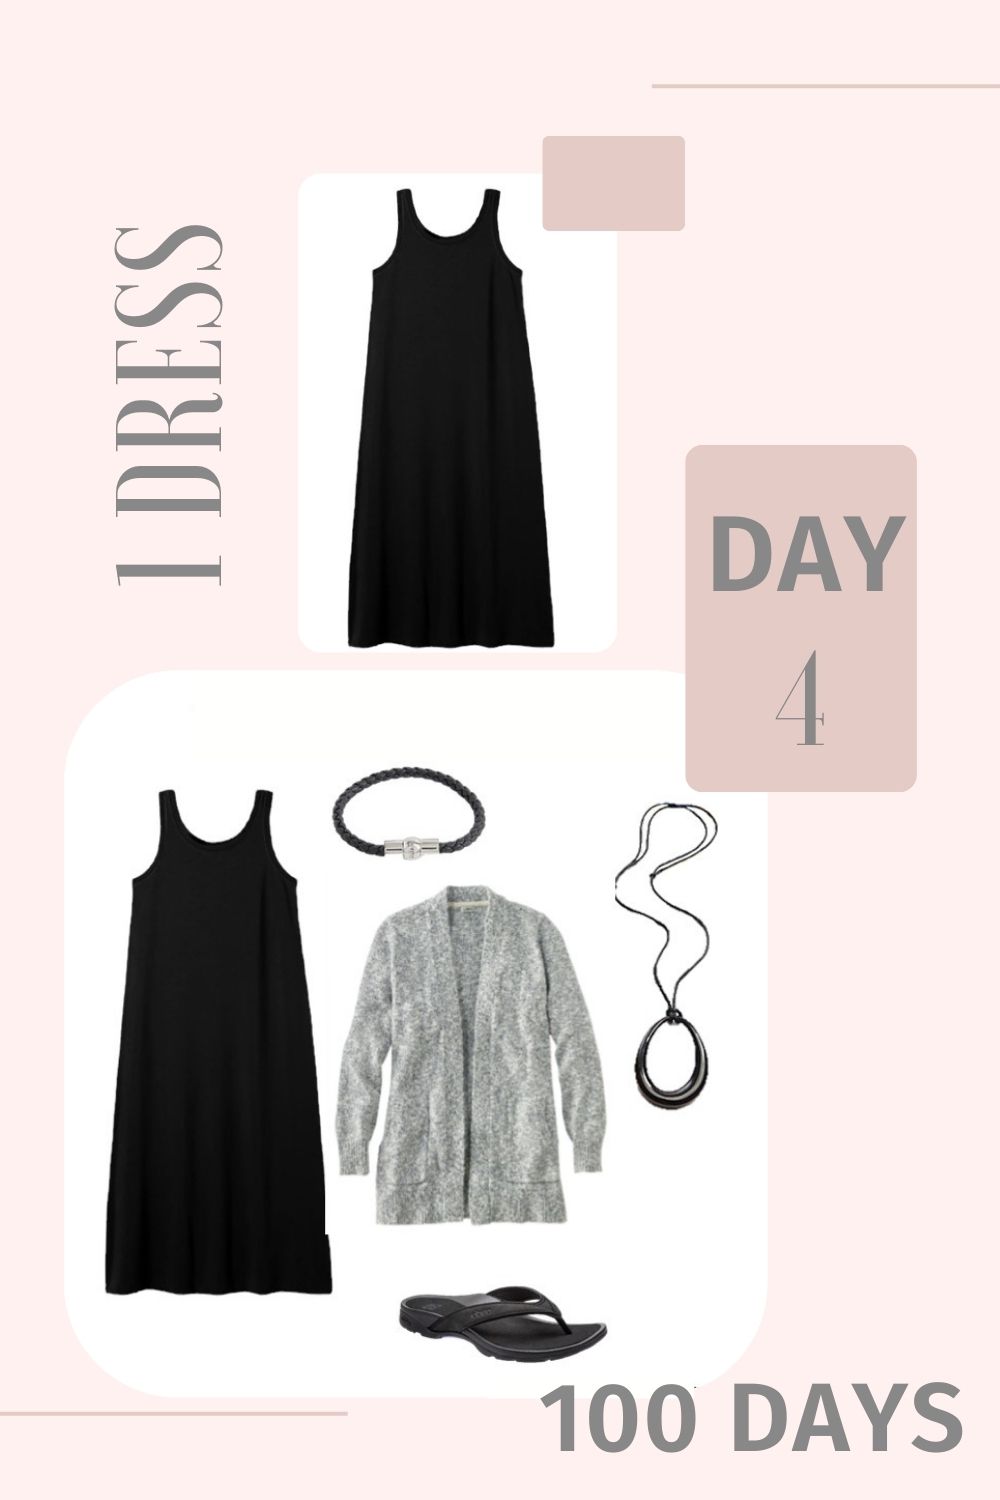 1 Dress 100 Days - Day 4